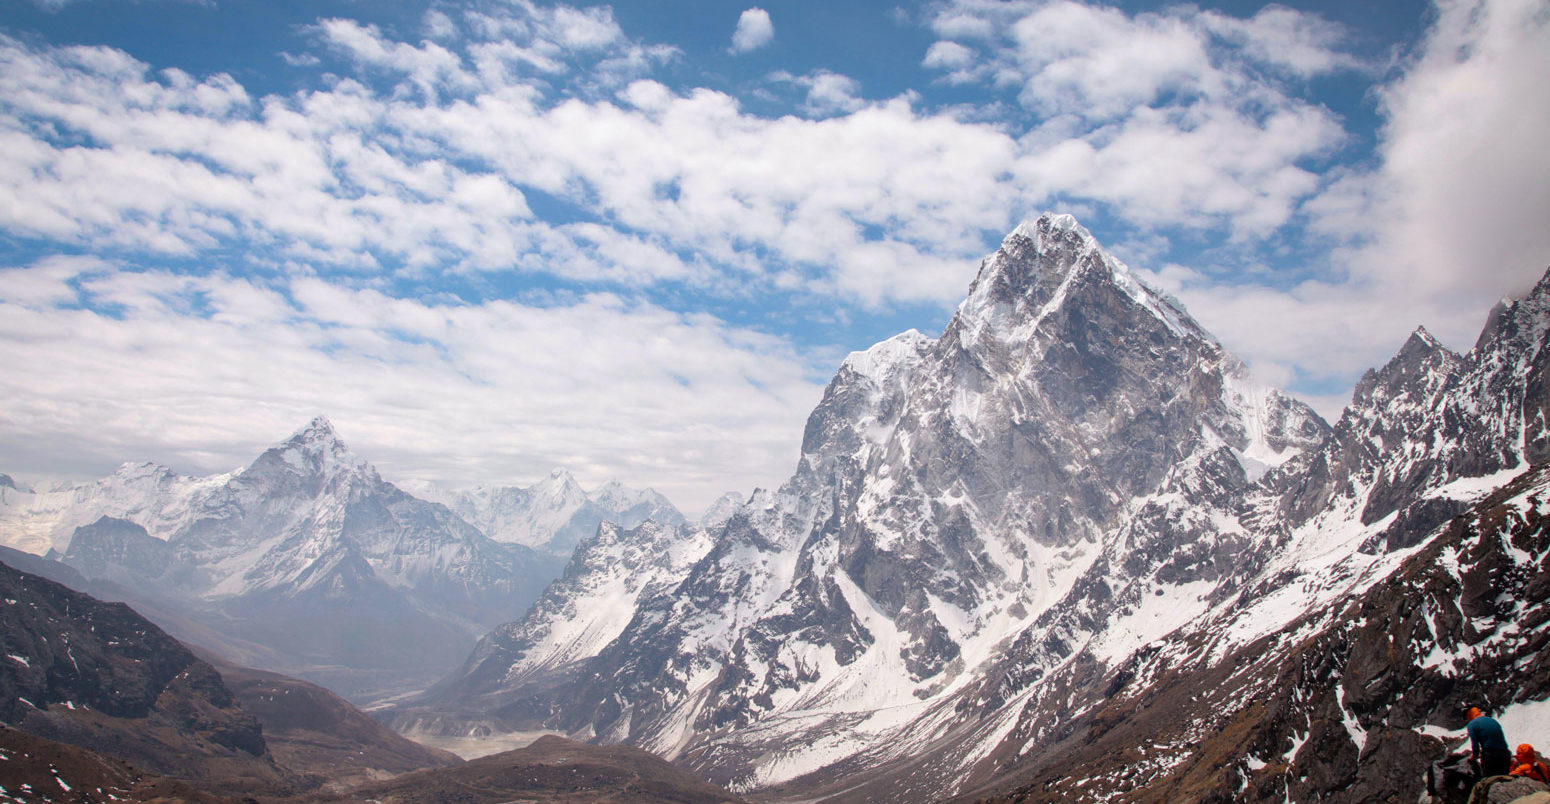 Ama Dablam在途中的看法在珠穆朗玛峰基本营地尼泊尔